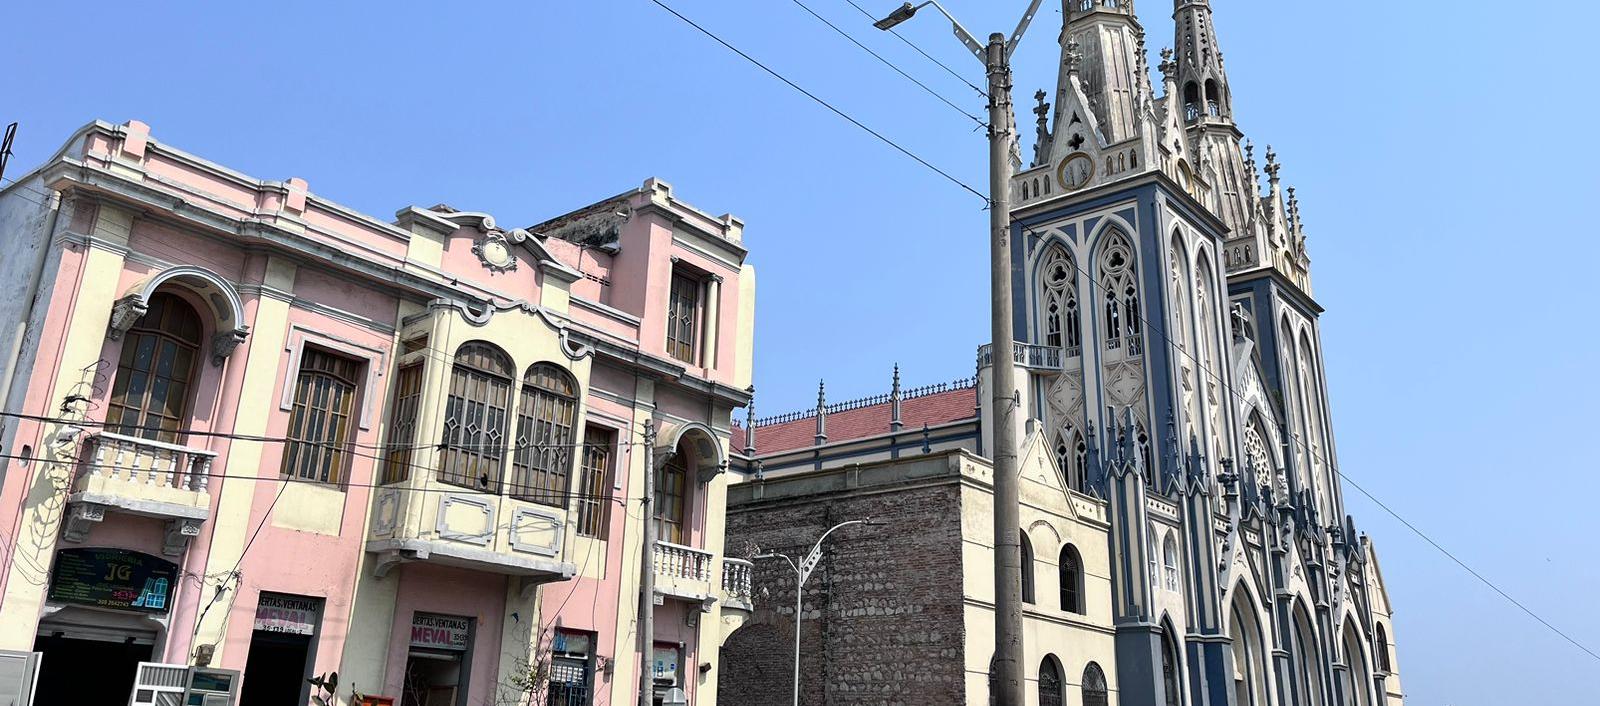 Propios y visitantes podrán admirar la belleza arquitectónica de las iglesias en Barranquilla.